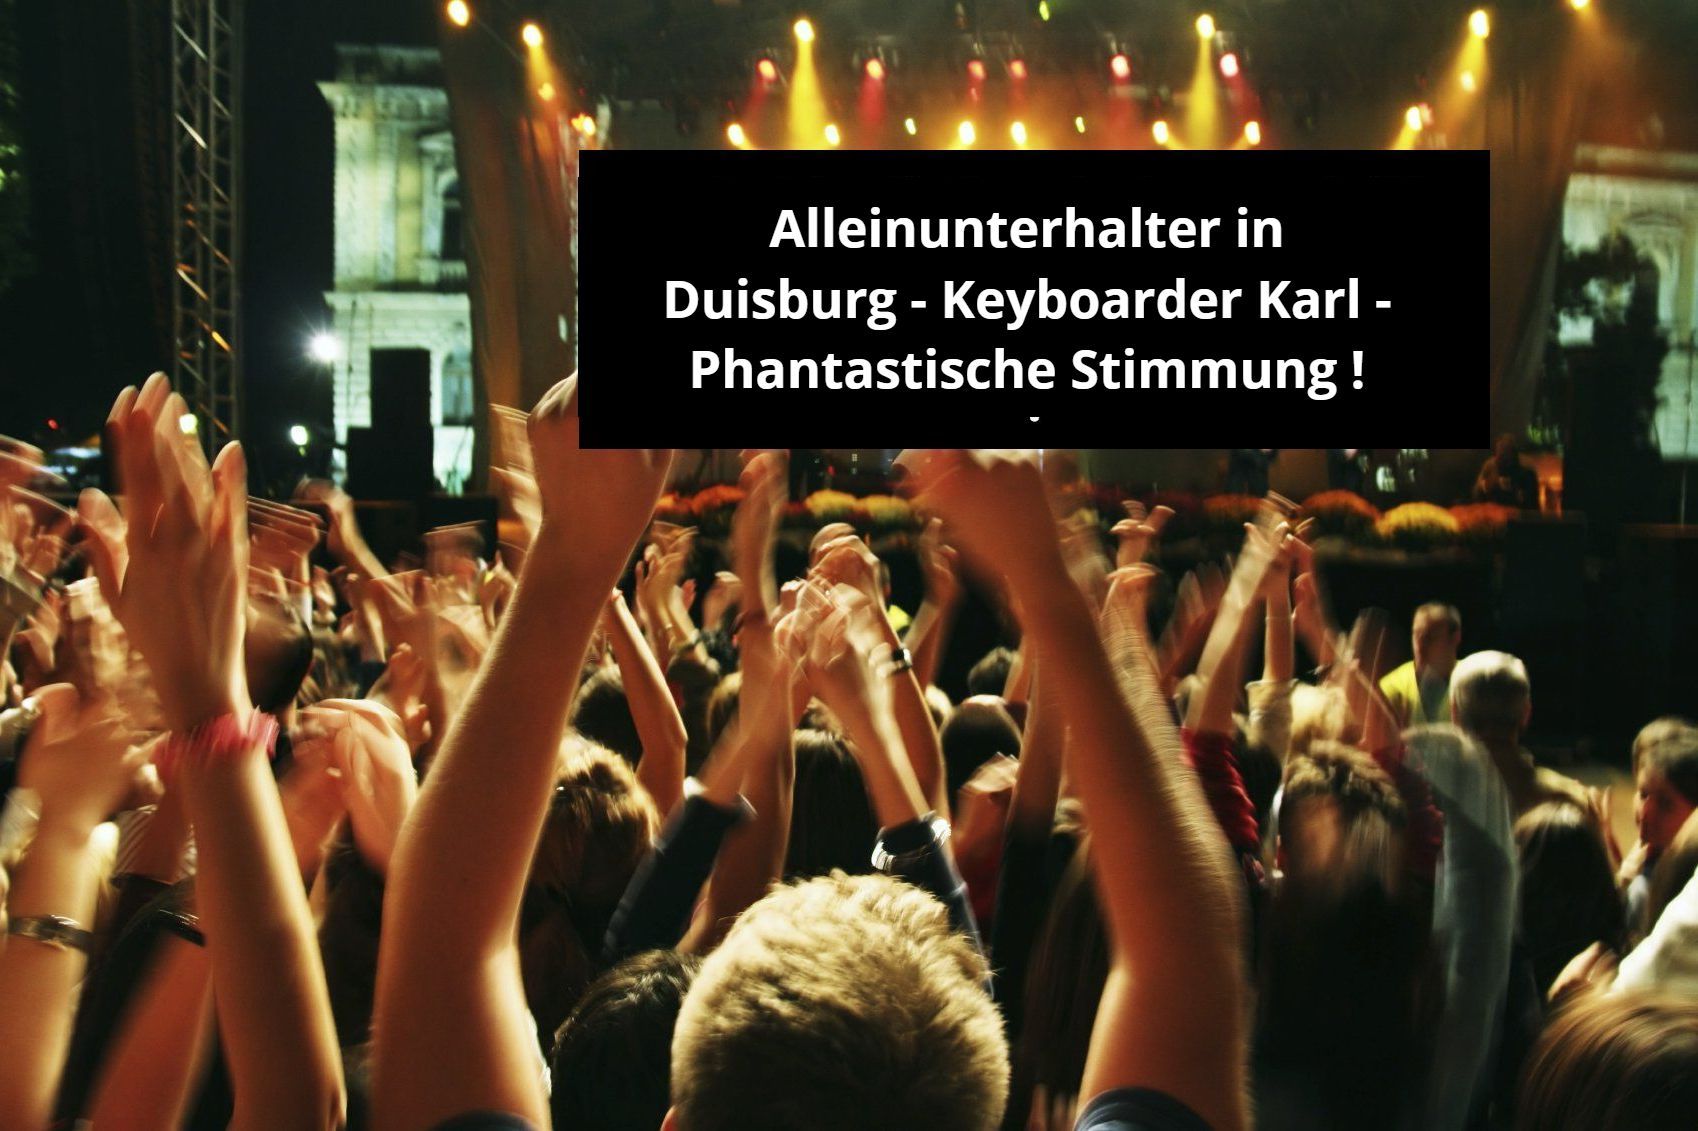 Alleinunterhalter in Duisburg - Phantastische Stimmung bei Keyboarder Karl